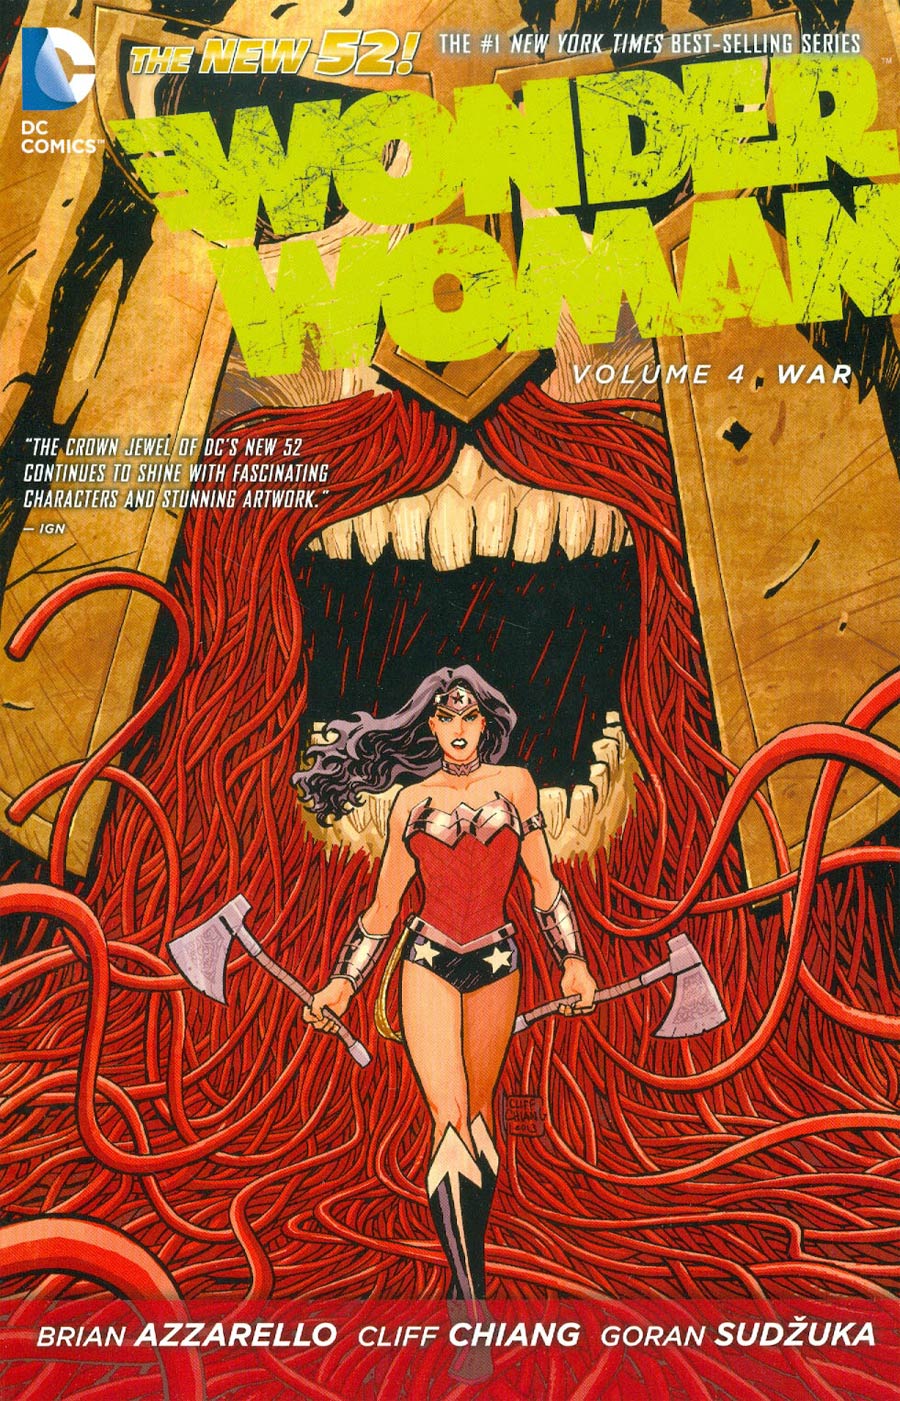 Wonder Woman (New 52) Vol 4 War TP